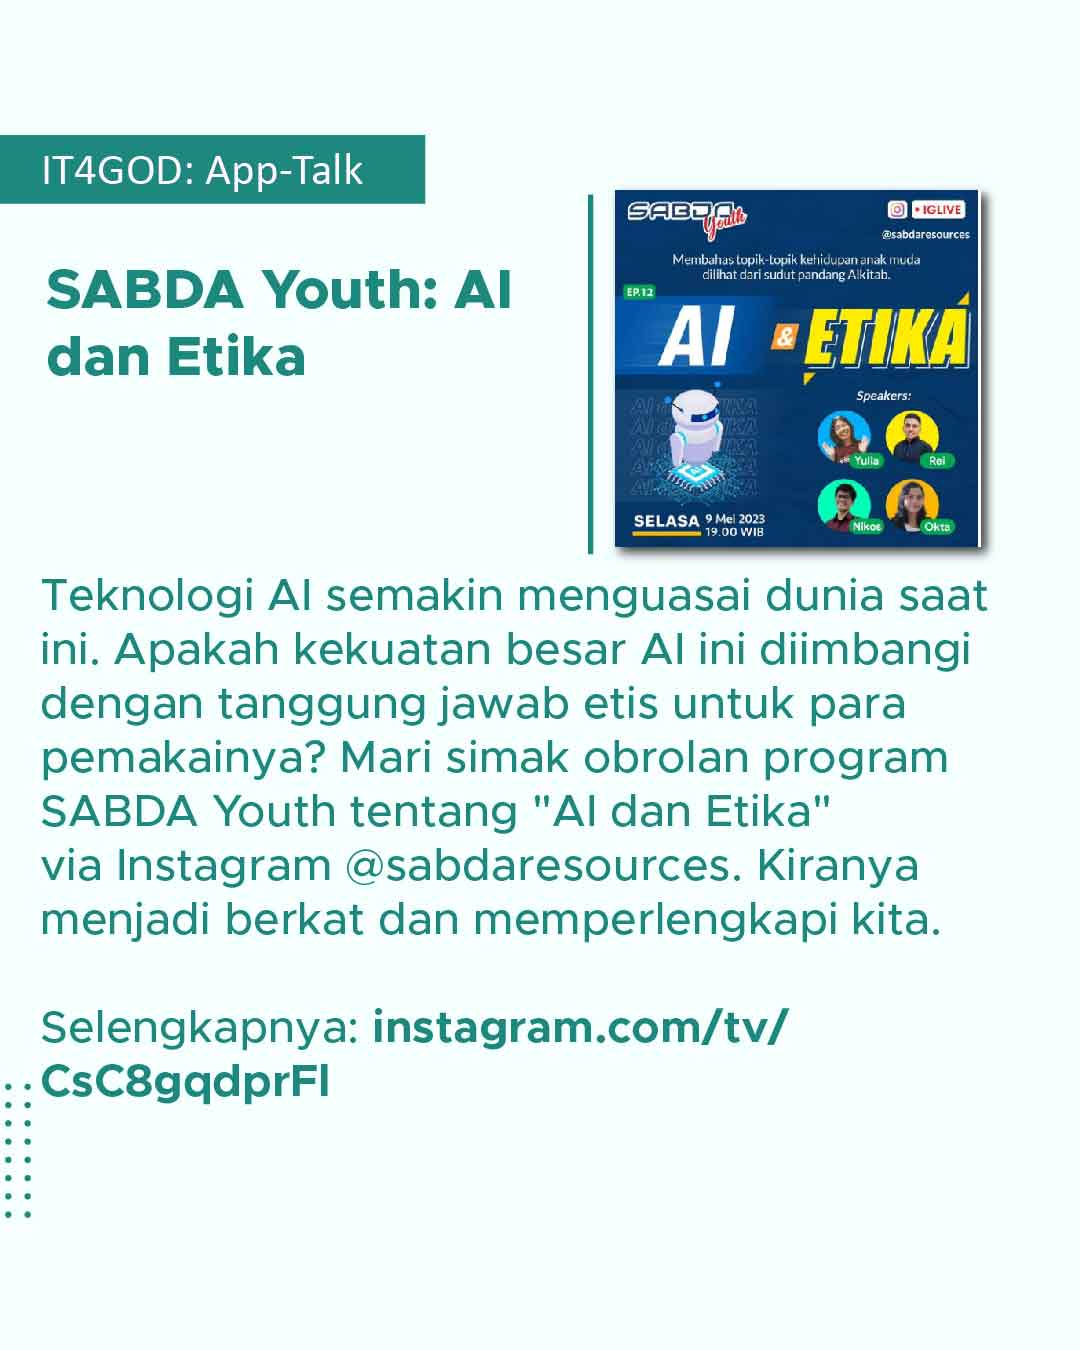 Bincang-bincang program SABDA Youth tentang AI dan Etika.